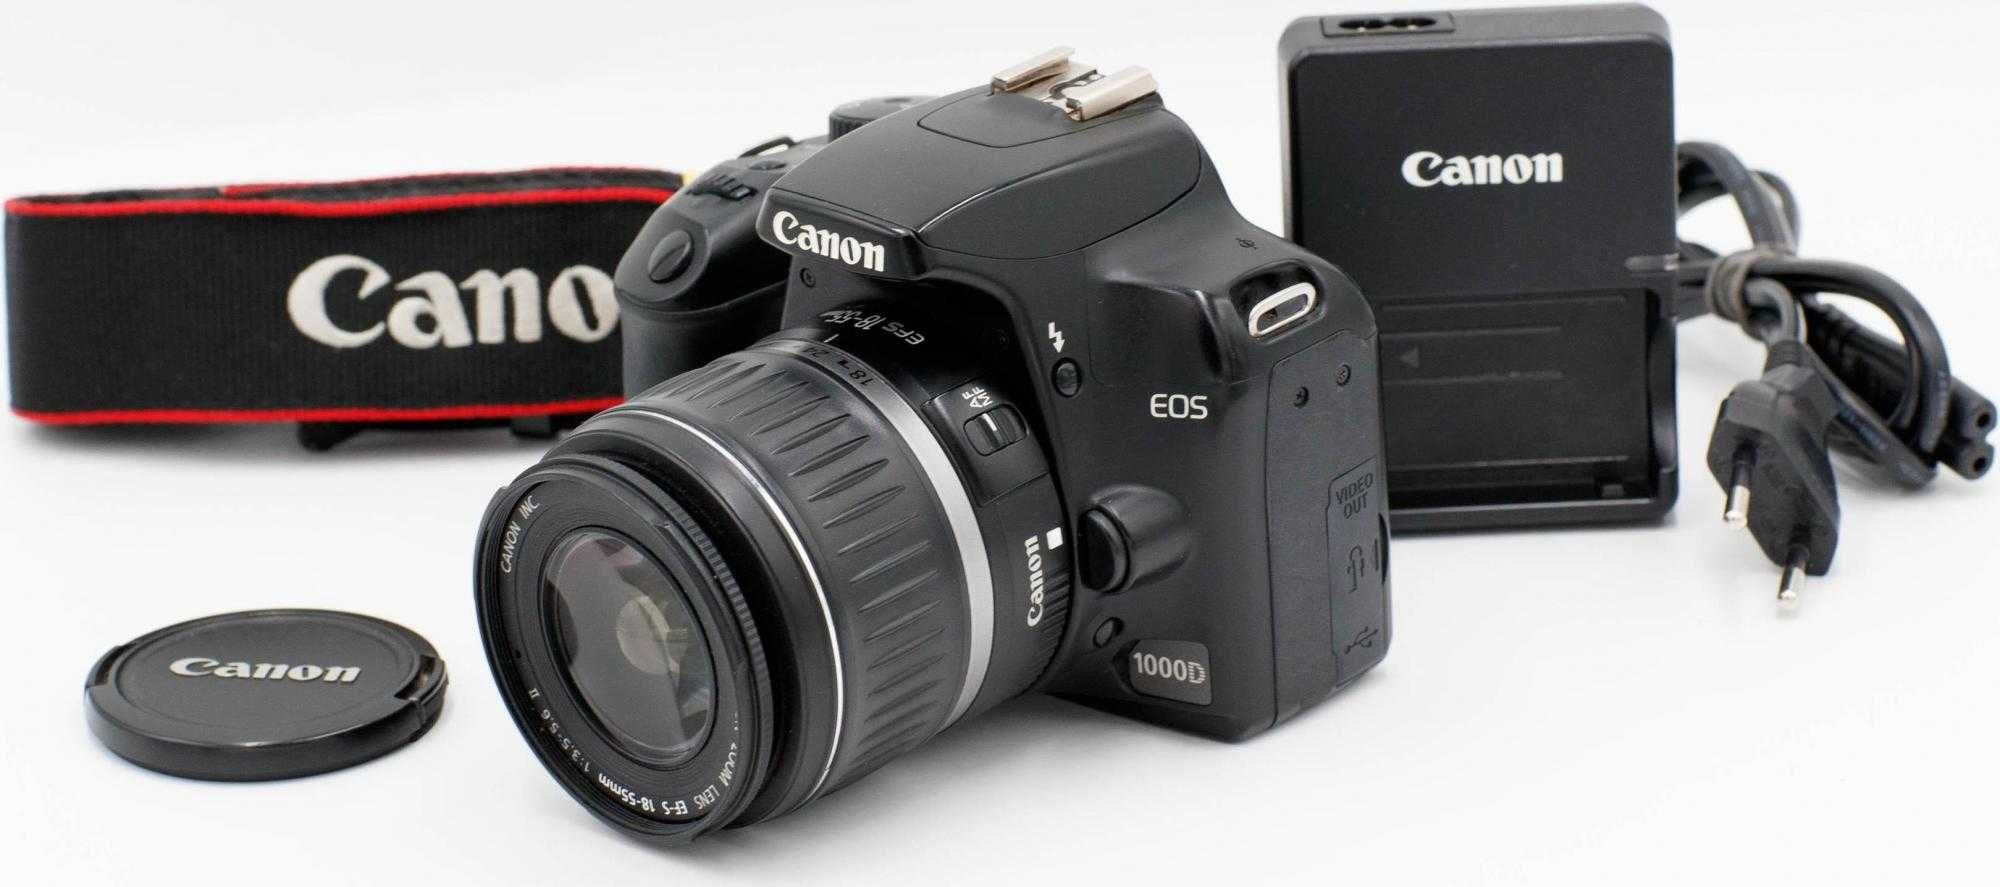 Зеркальный фотоаппарат Canon EOS 1000D Kit - (18-55mm) - CMOS - Идеал